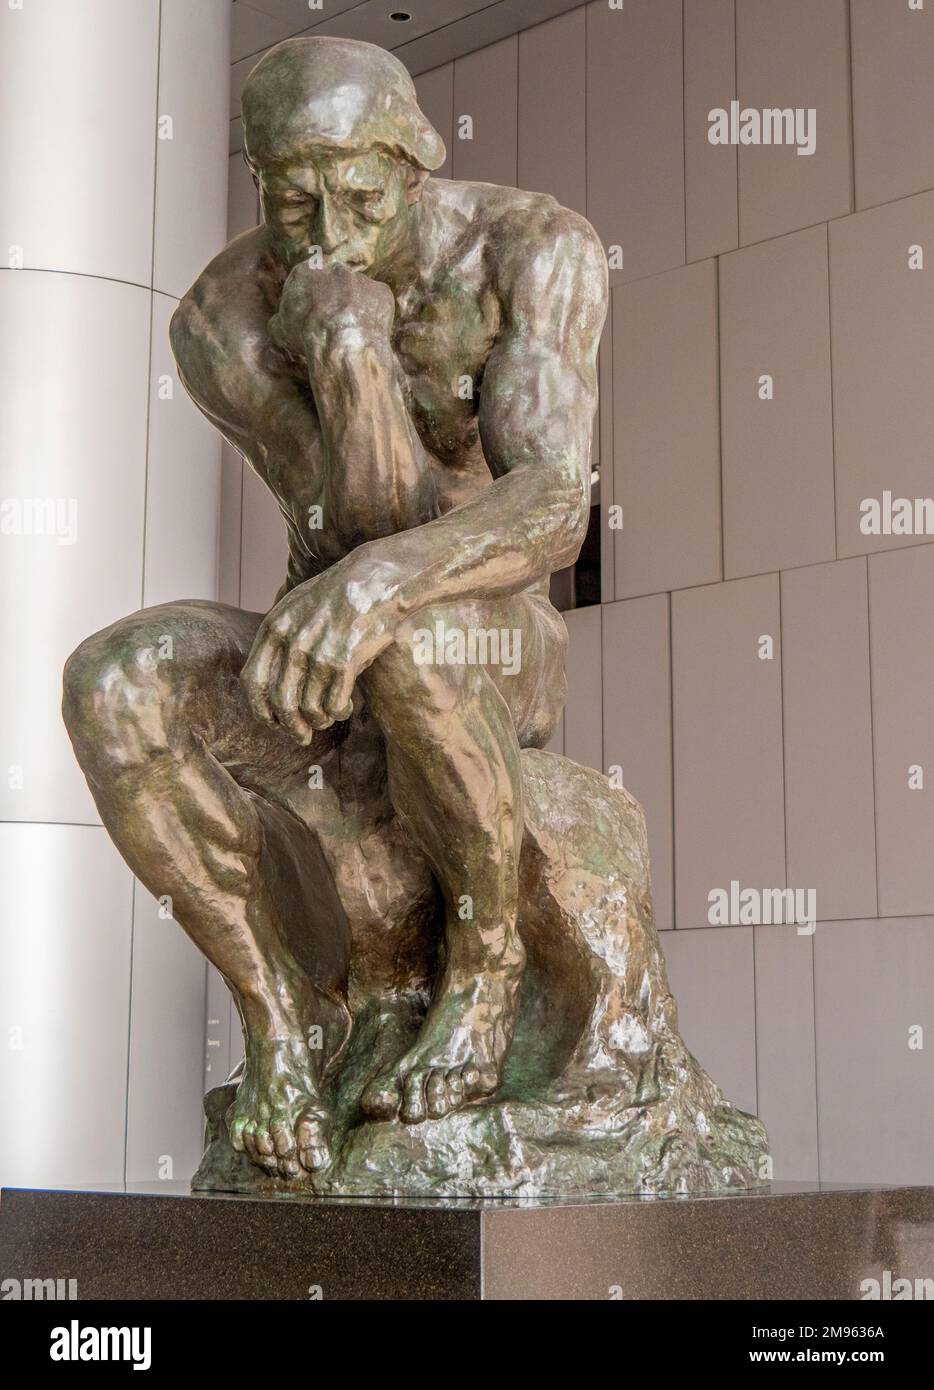 Bronzestatue The Thinker von Auguste Rodin in öffentlicher Ausstellung unter dem OUE Bayfront Building im CBD oder Singapur Stockfoto